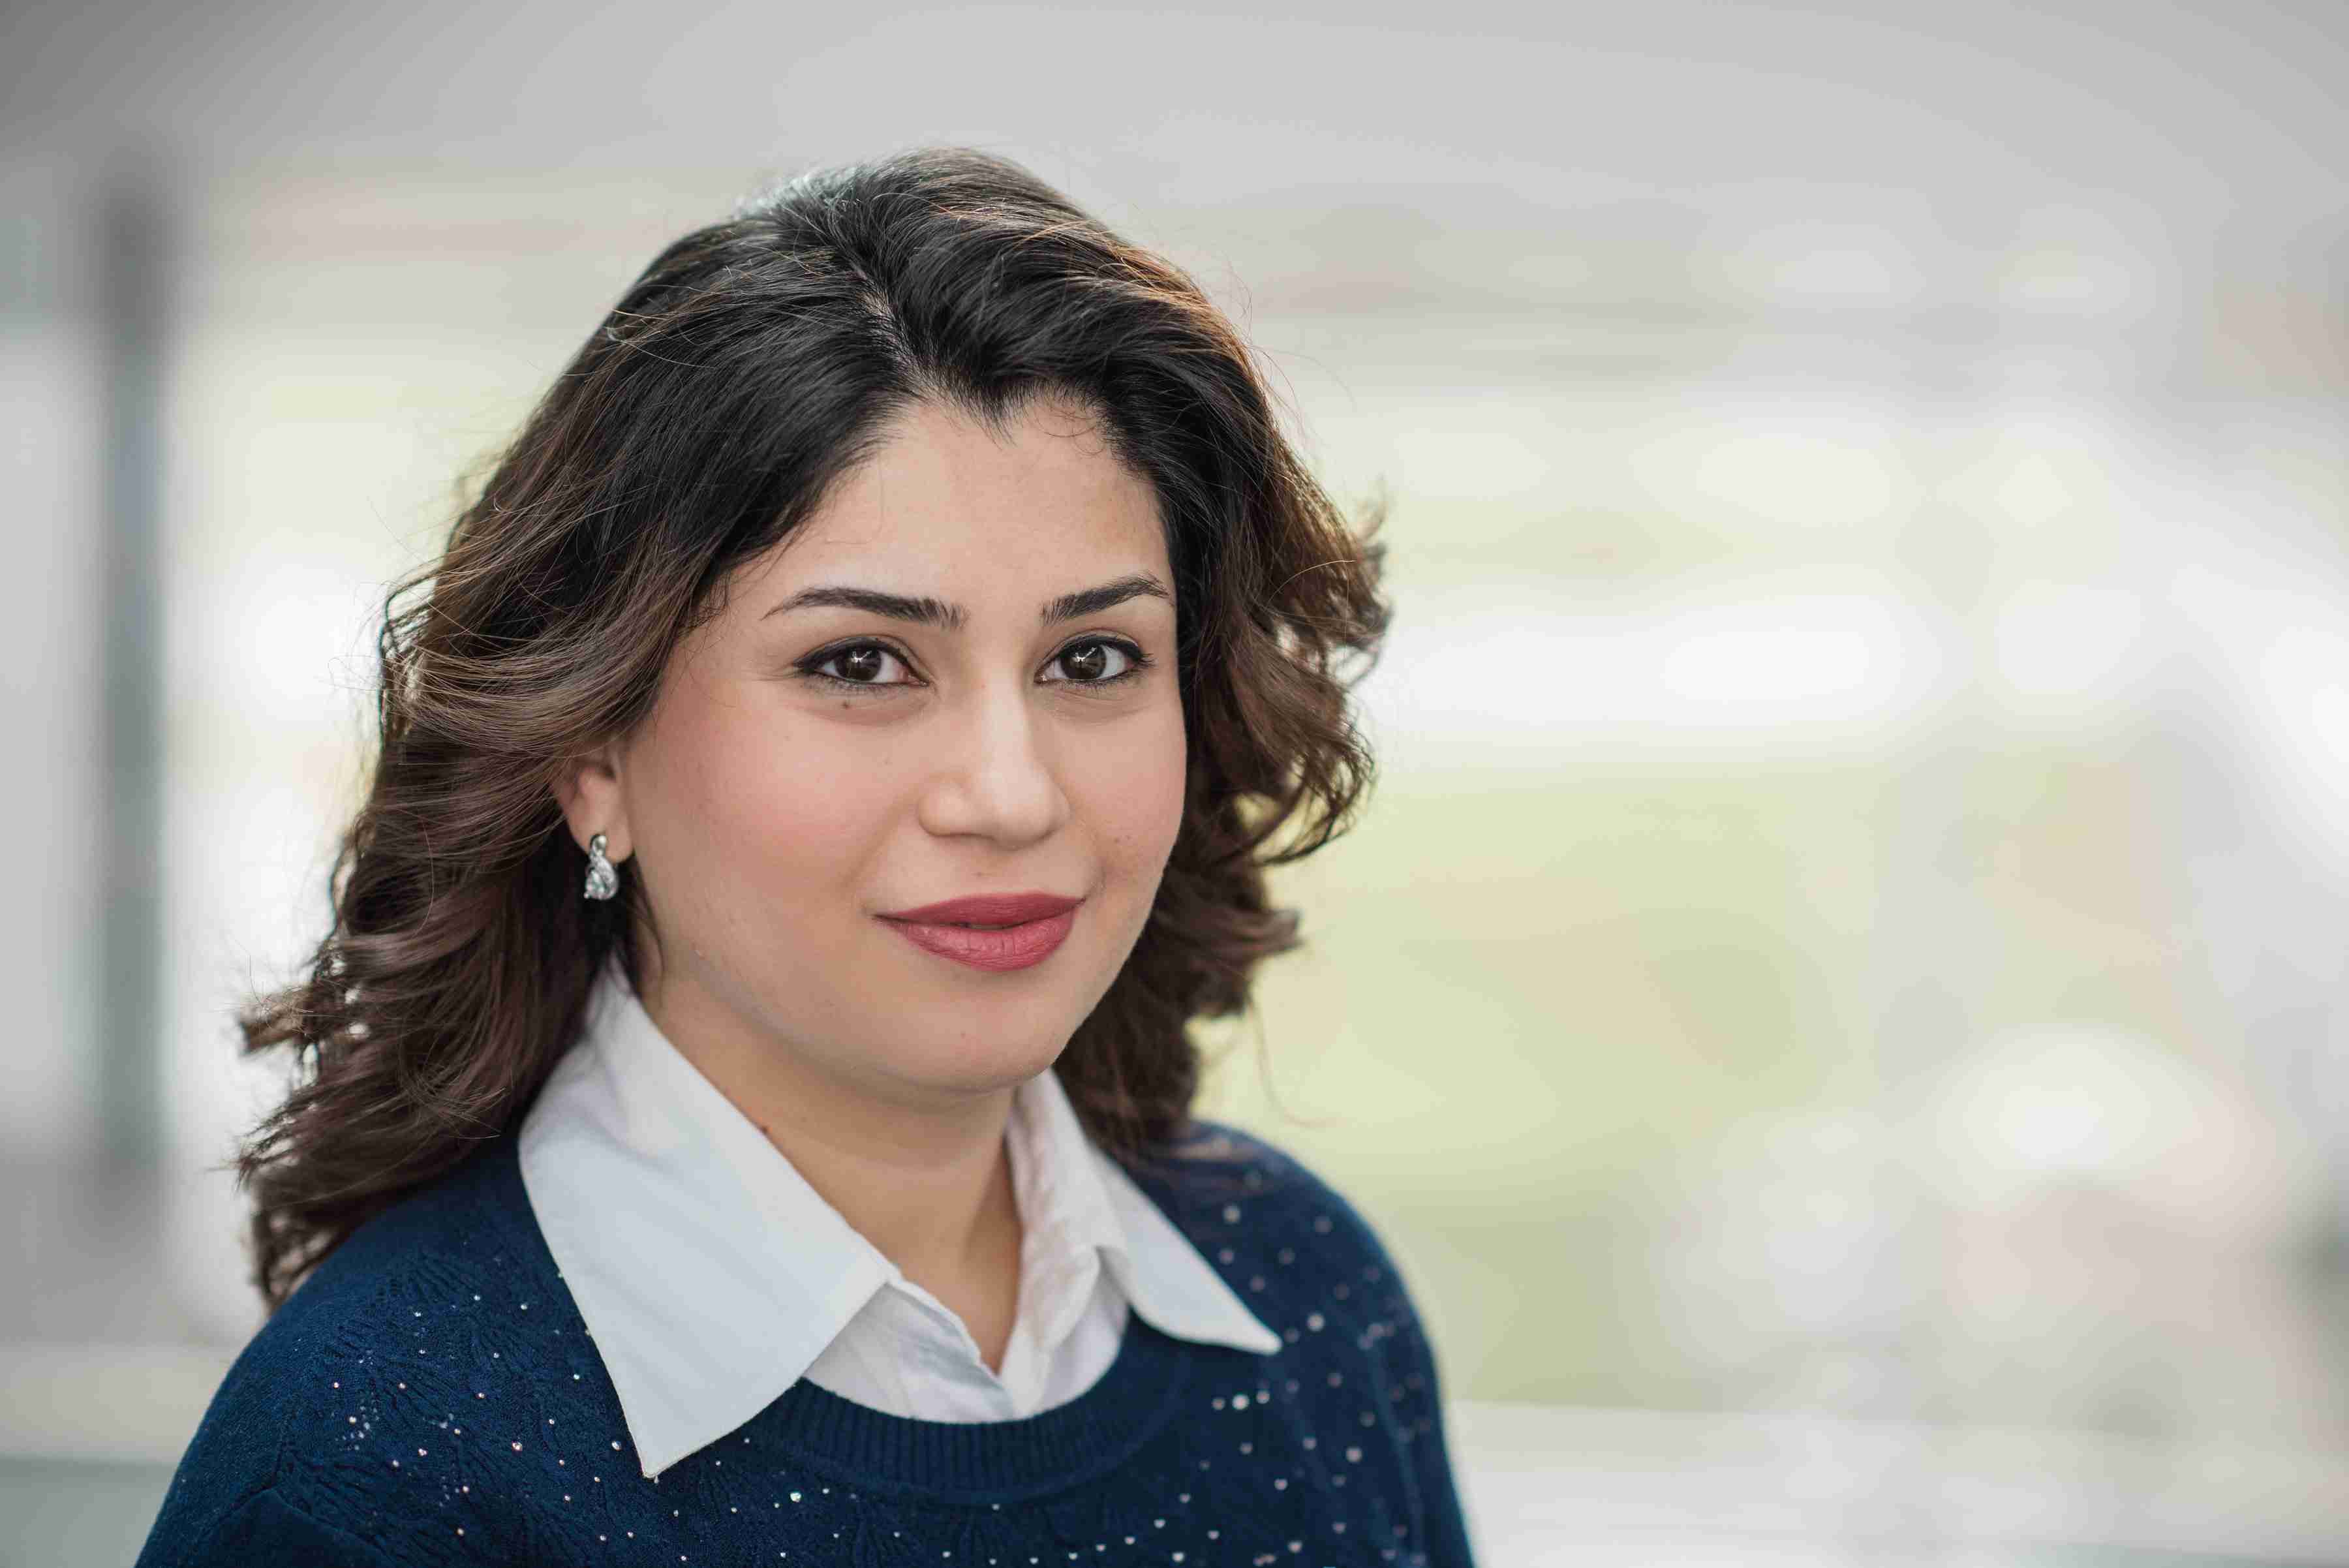 Profile image of Sahar Khonsari